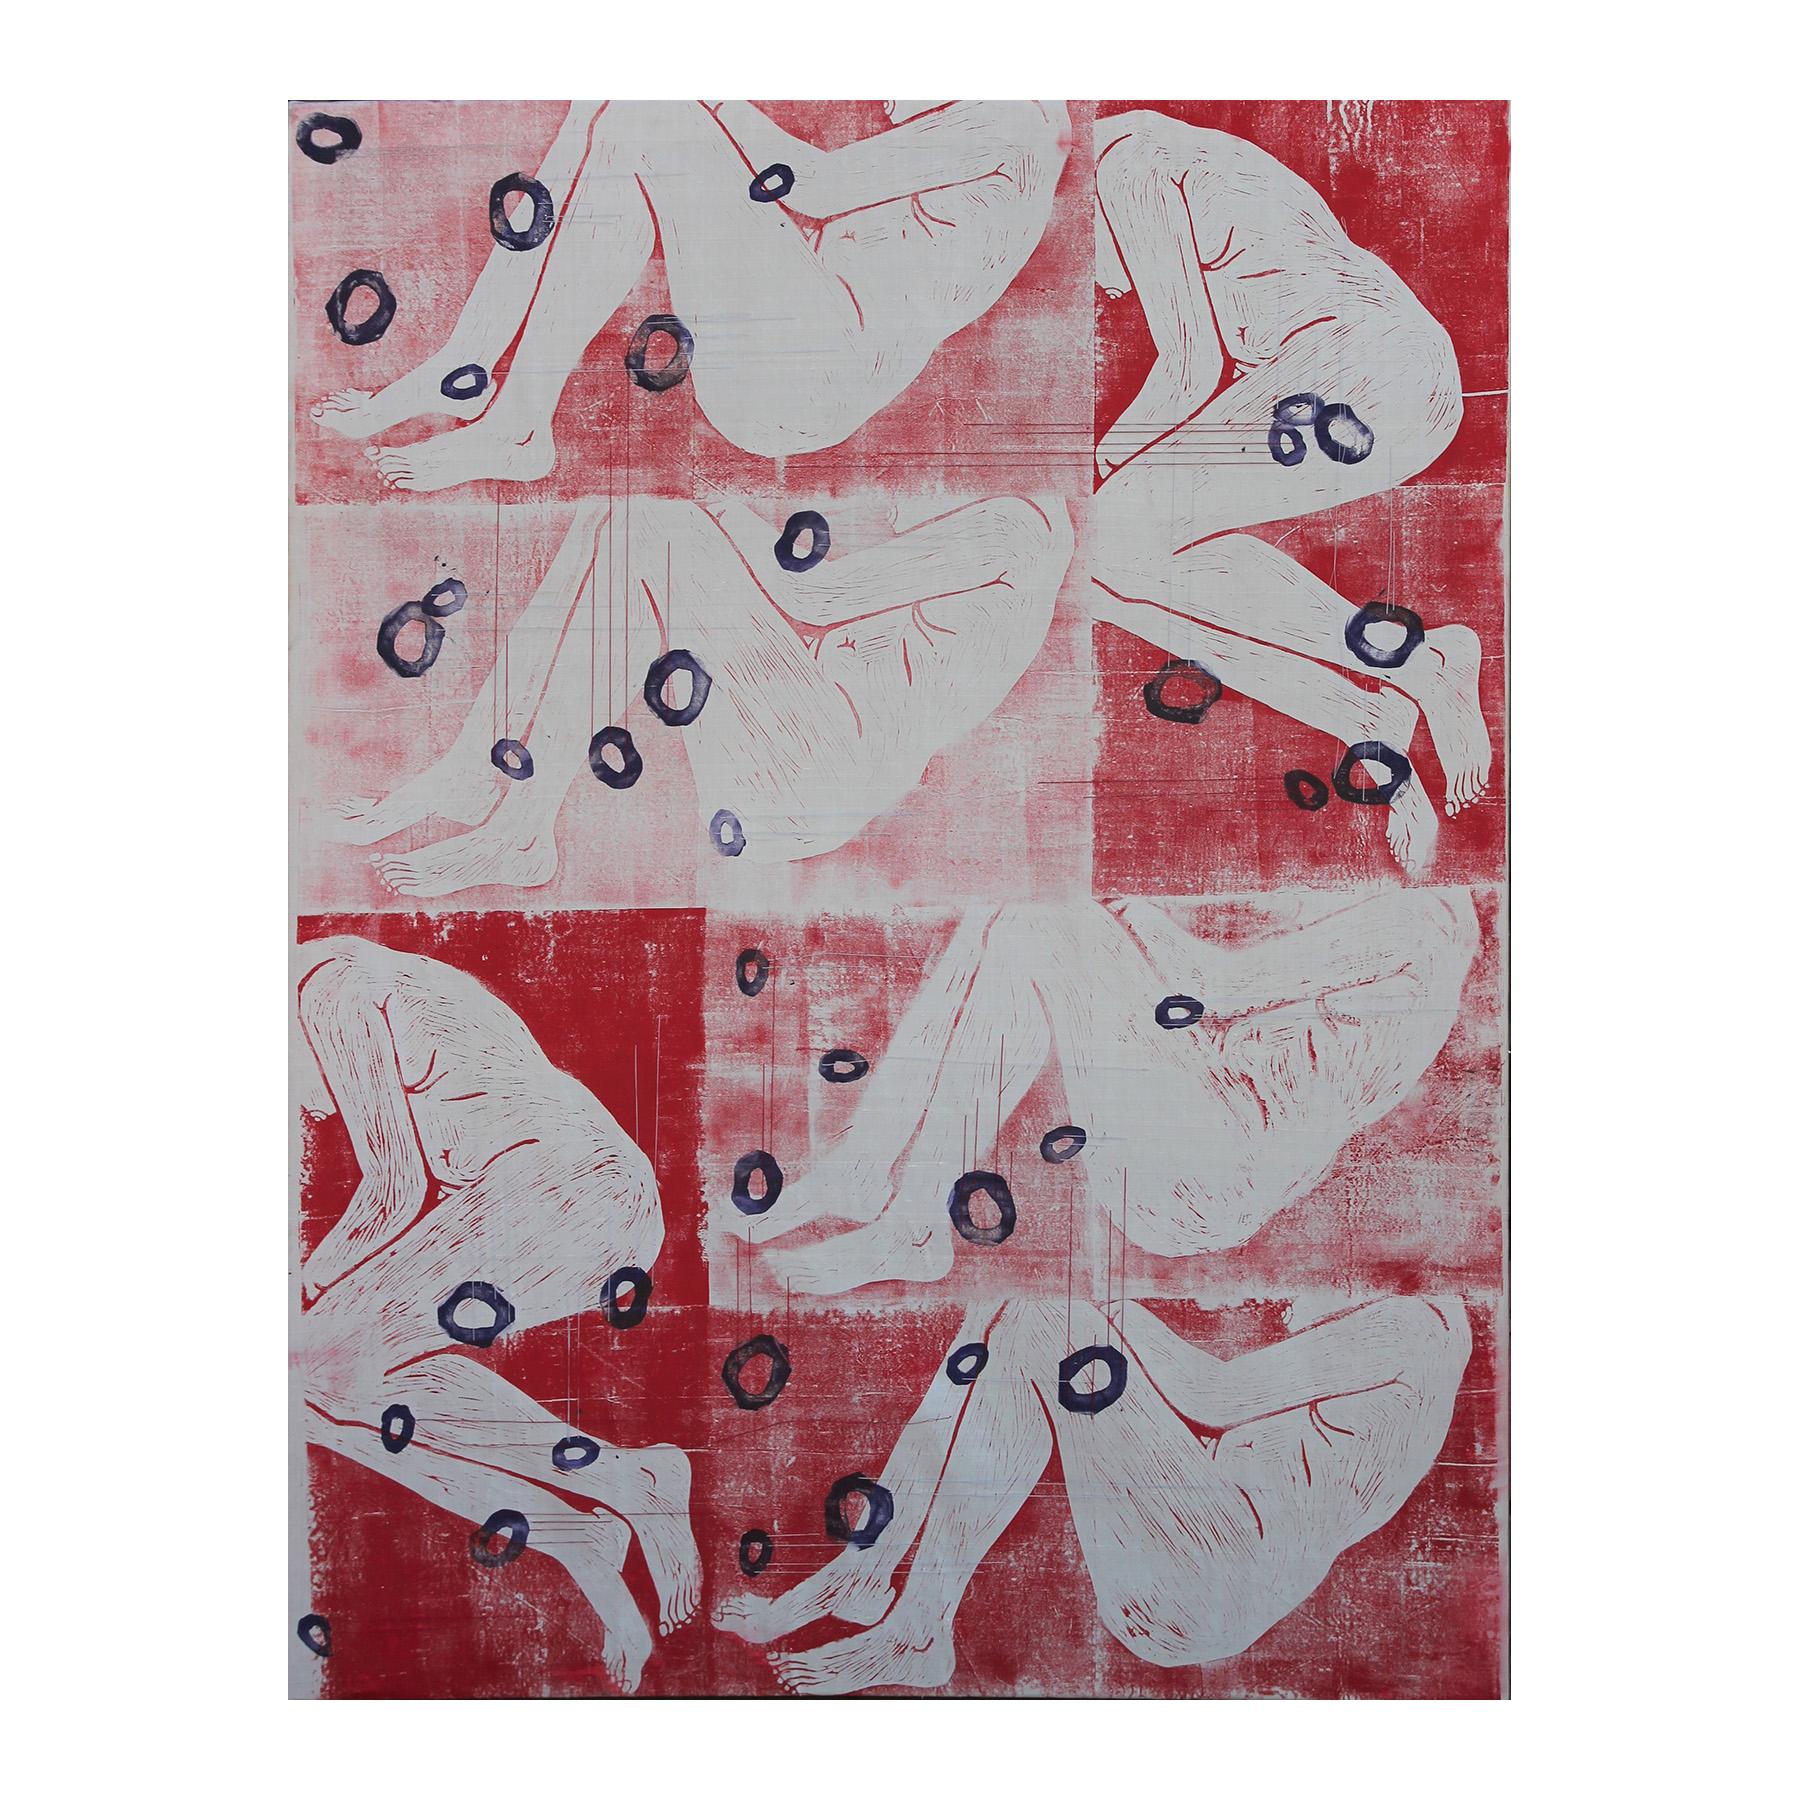 Abstract Painting Rebecca Nall - Peinture figurative moderne abstraite rouge et blanche en techniques mixtes avec accents de fil